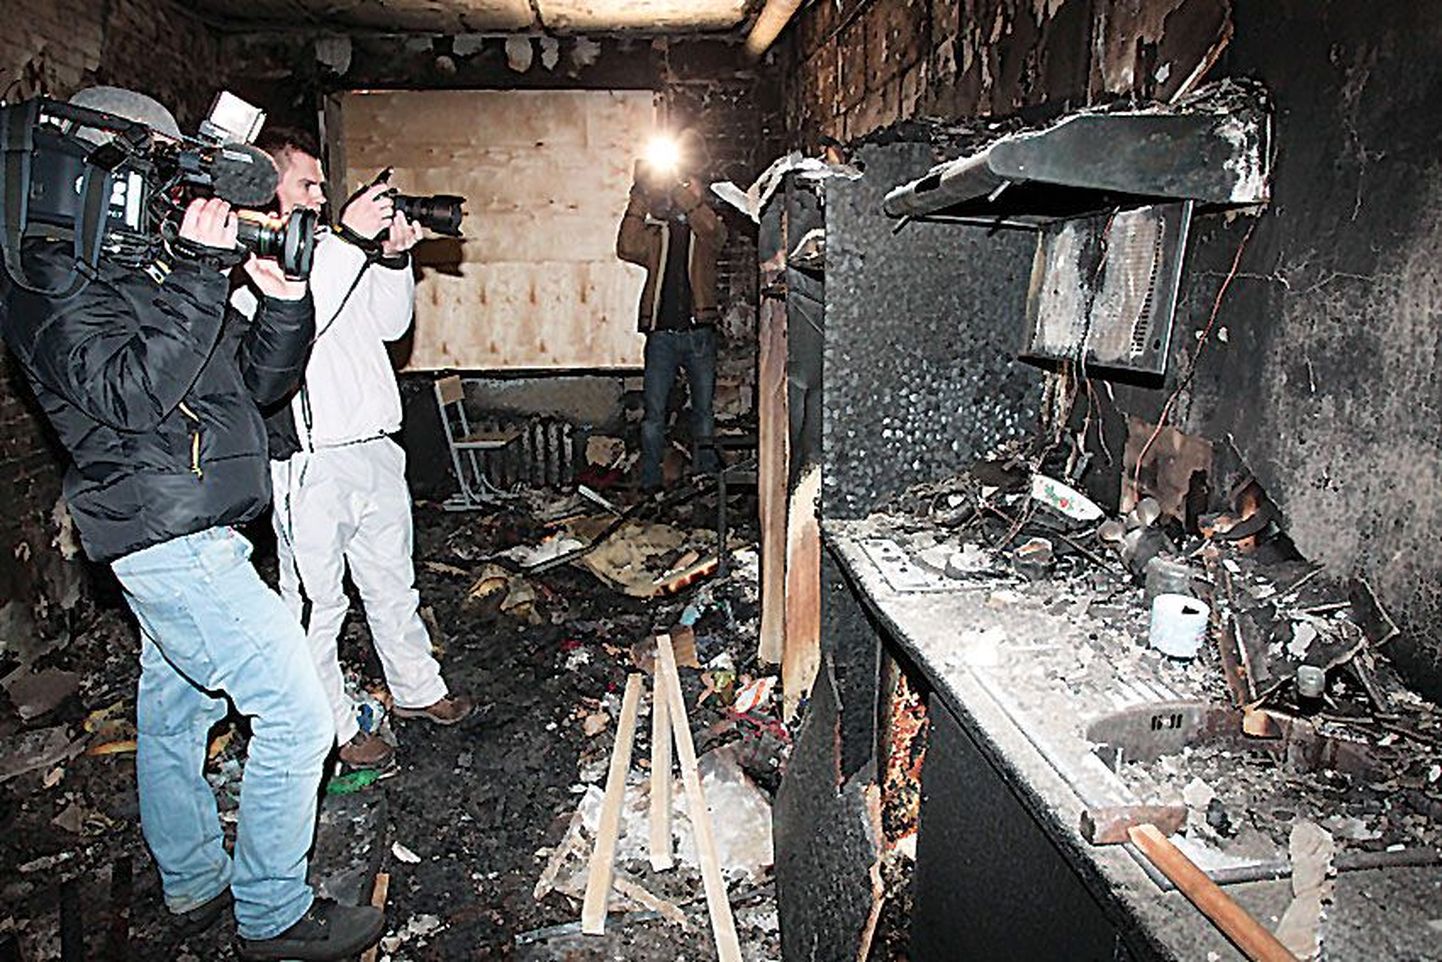 В ночь на воскресенье в социальном доме в Таллинне произошел пожар, люди не пострадали.